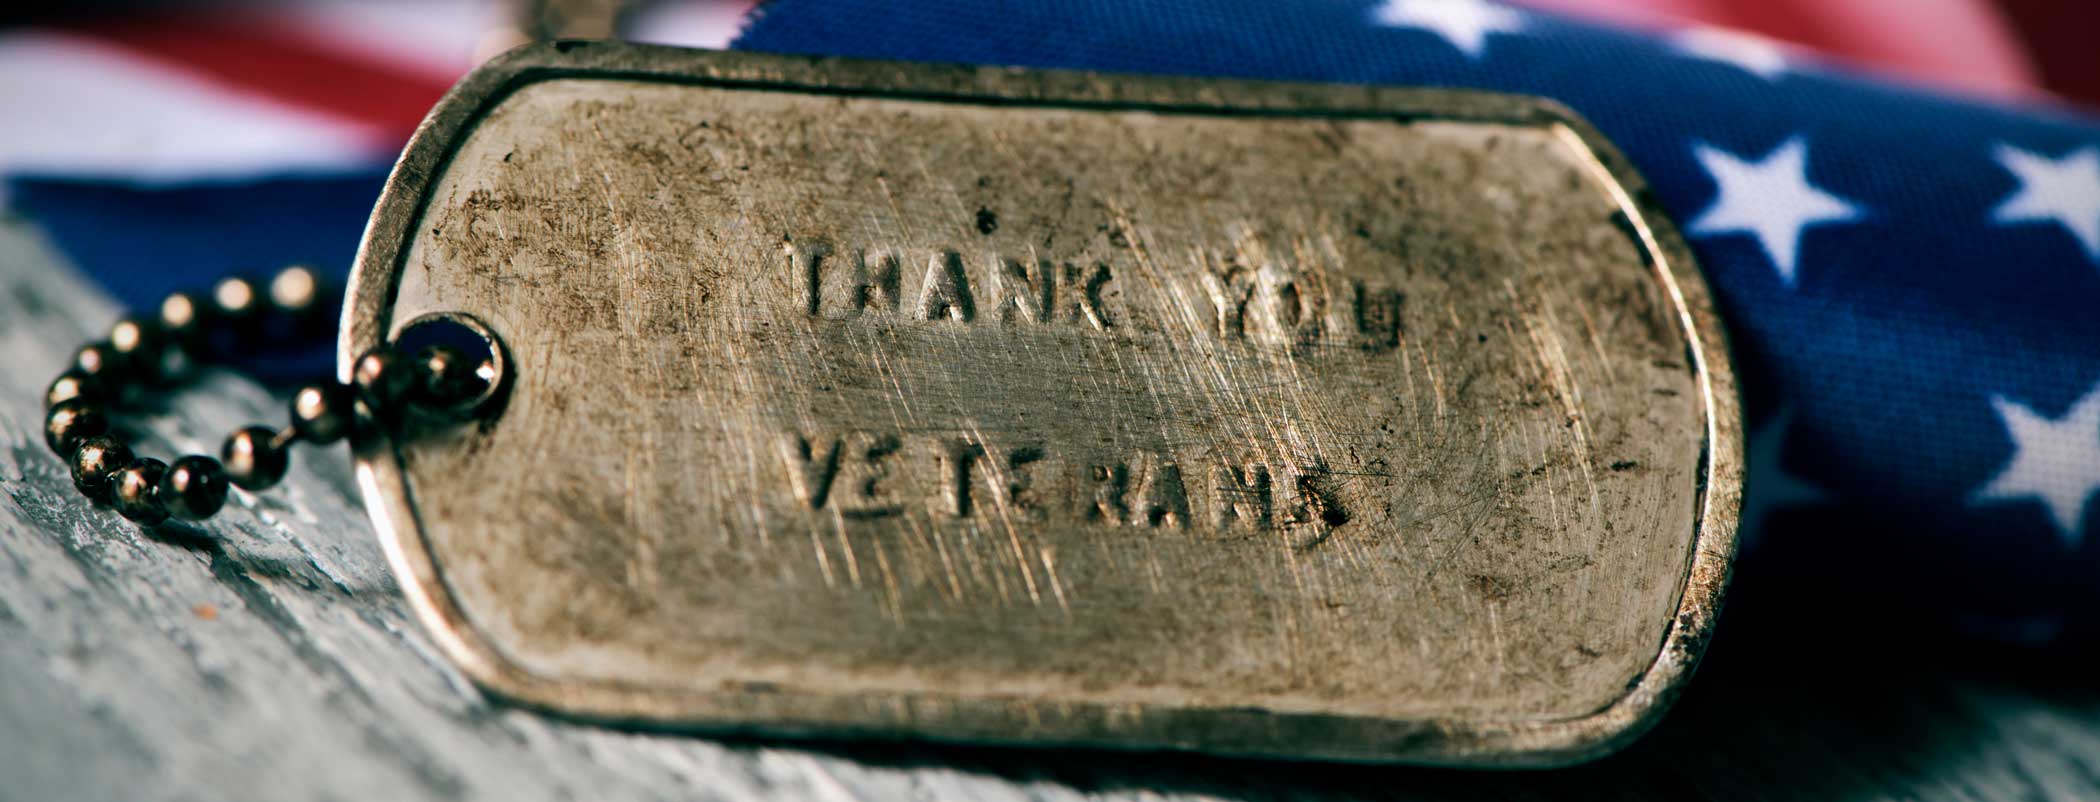 veterans banner